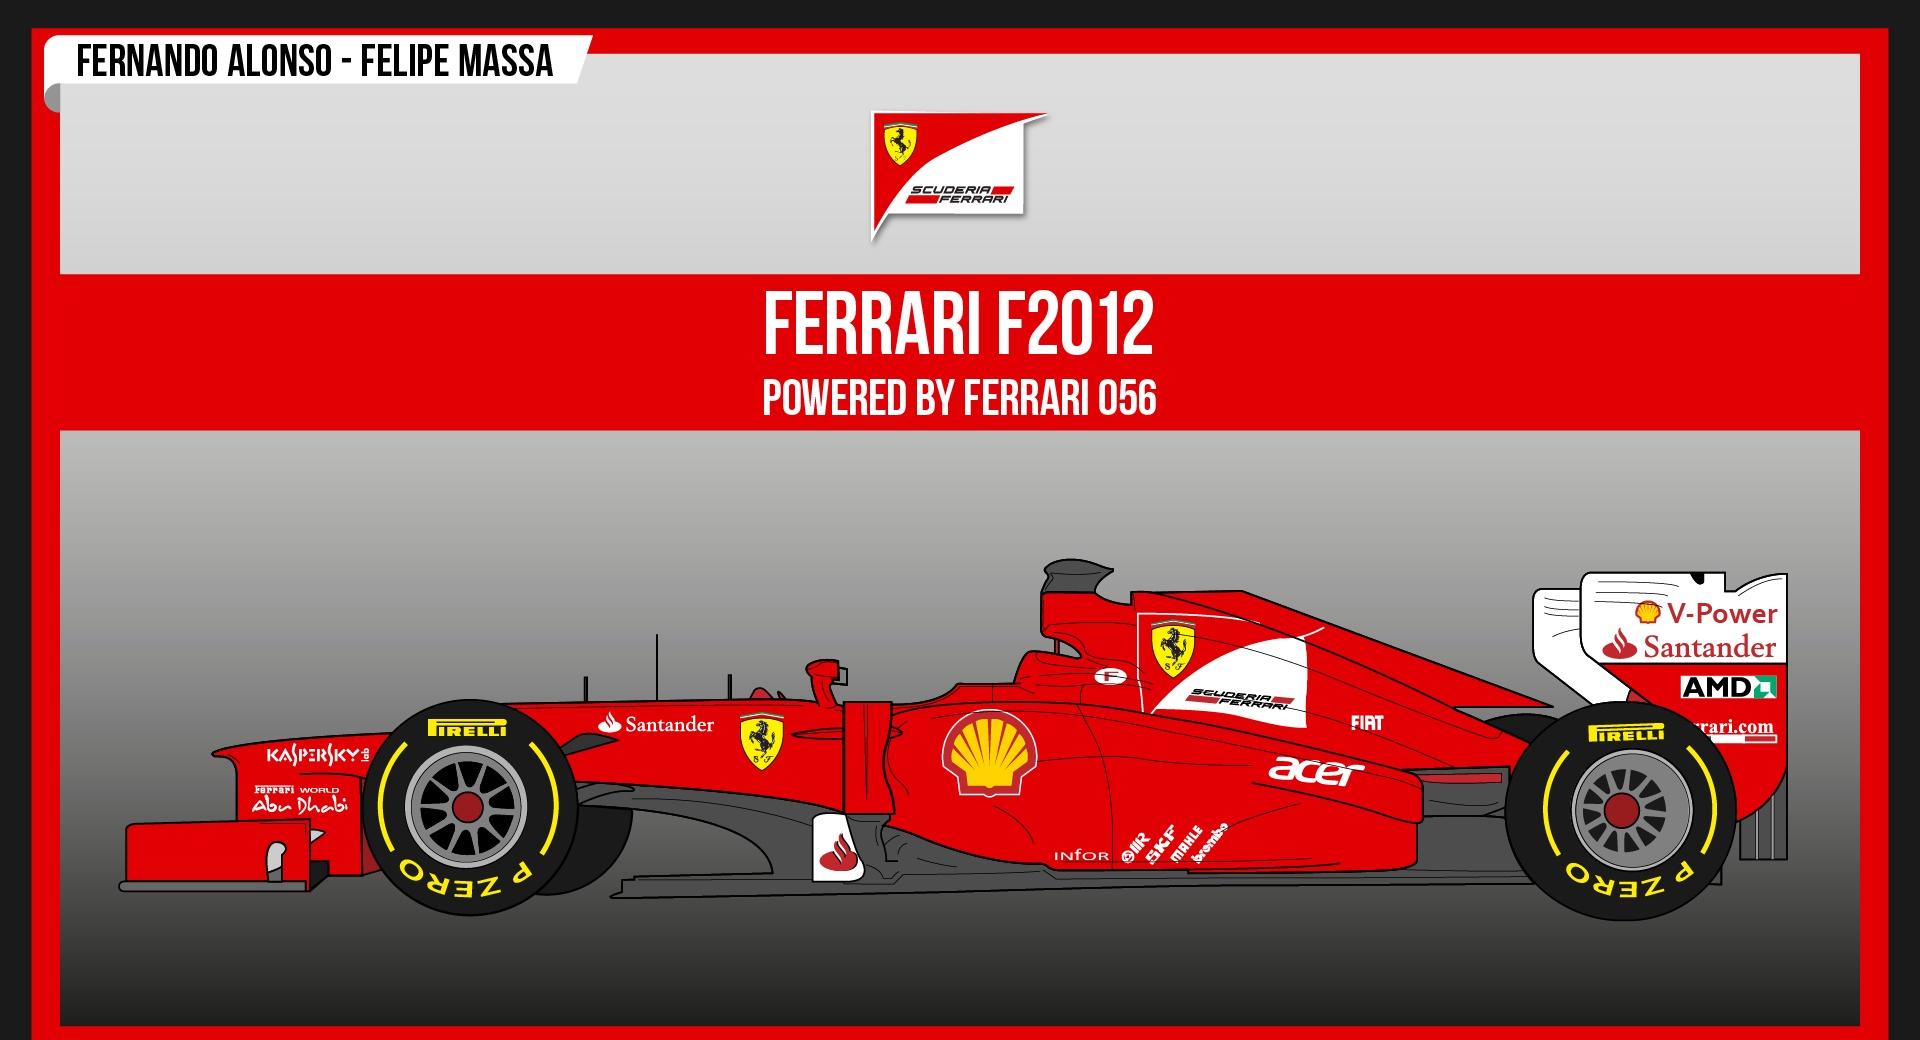 Ferrari F2012 at 1024 x 768 size wallpapers HD quality